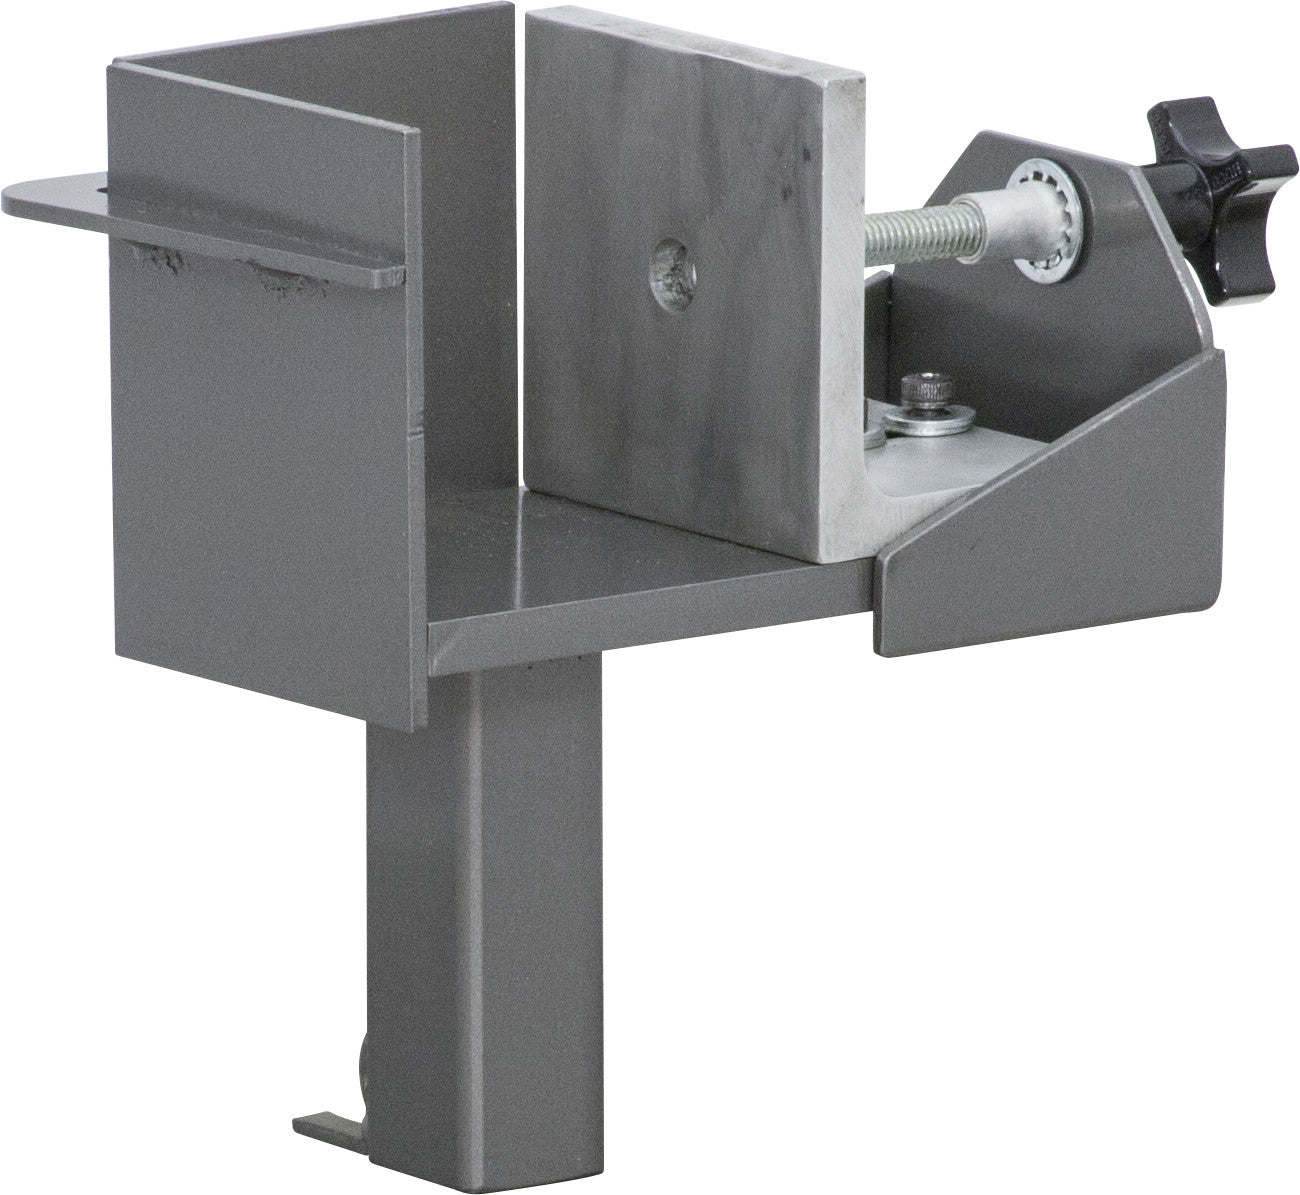 15 x 15 Hix EVO Touch HT-400P Digital Clamshell Heat Press Machine